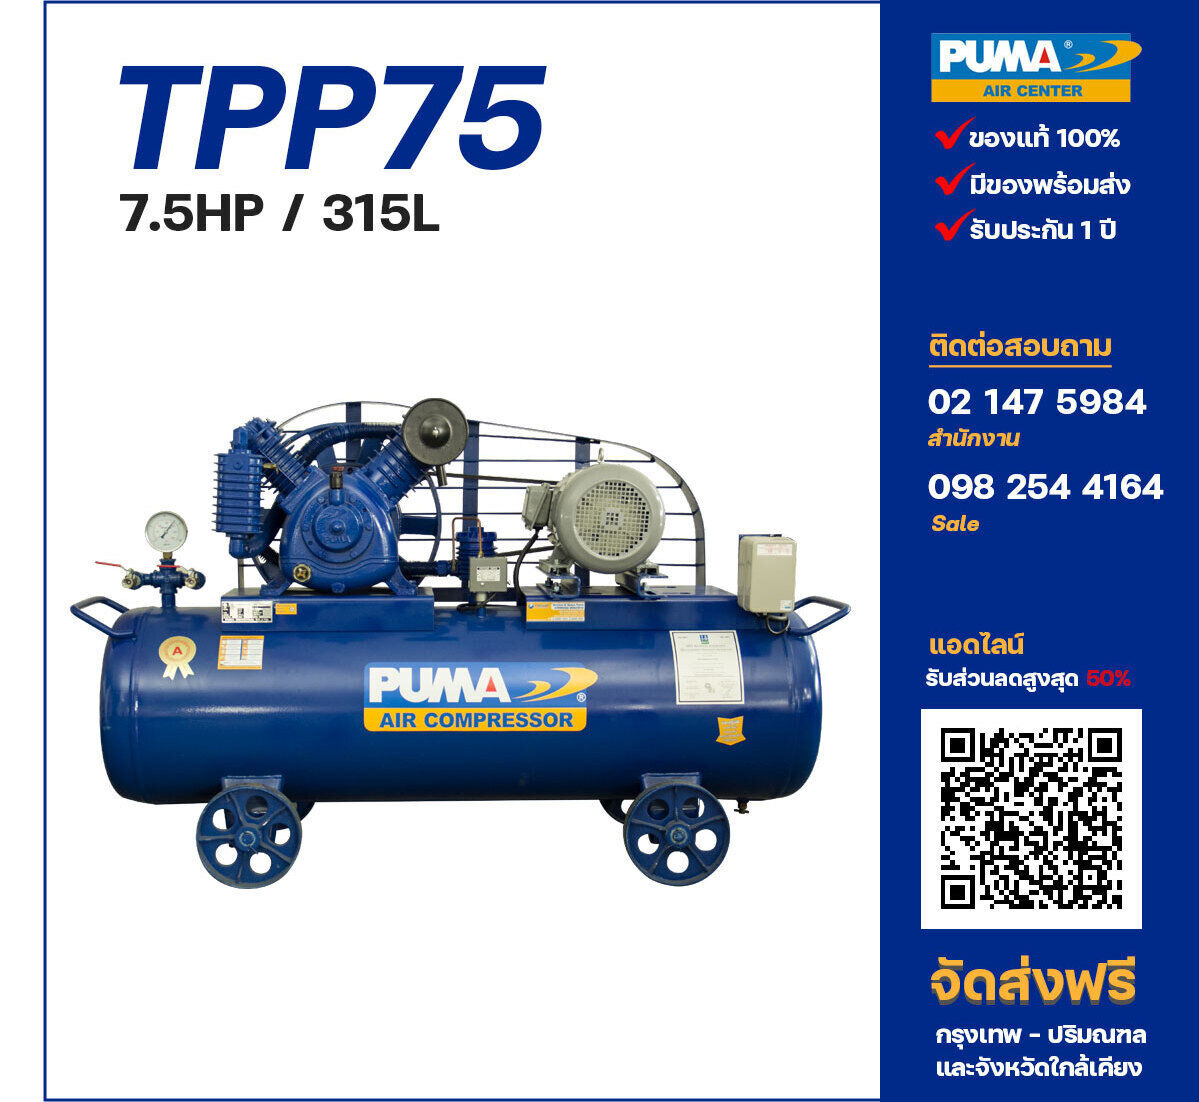 ปั๊มลมพูม่าแรงดันสูง PUMA Two-Stage TPP-75 ปั๊มลมลูกสูบ ขนาด 2 สูบ 7.5 แรงม้า 315 ลิตร PUMA พร้อมมอเตอร์ PUMA ไฟ 380V ส่งฟรี กรุงเทพฯ-ปริมณฑล รับประกัน 1 ปี